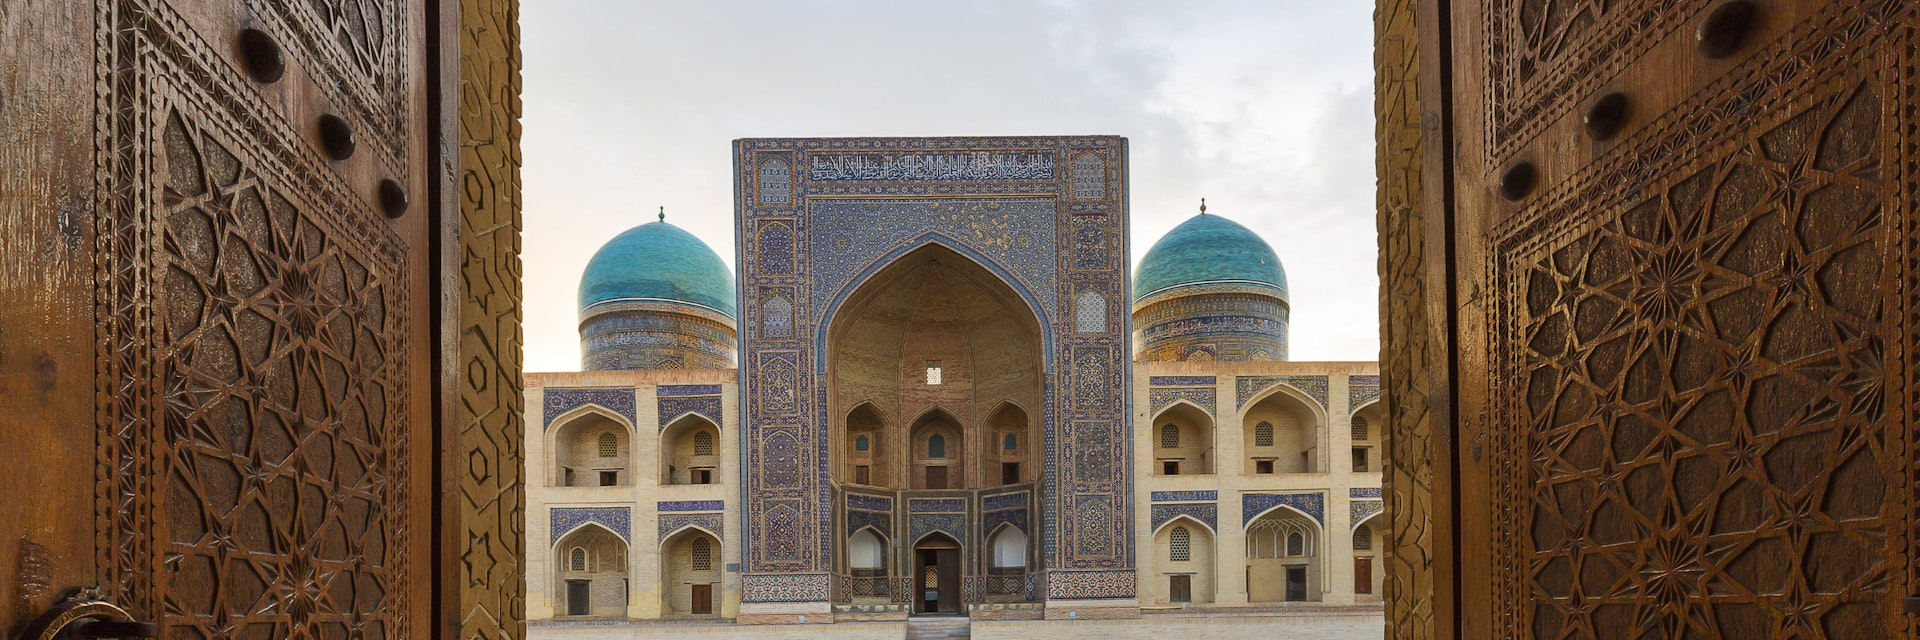 Blue domes of the Madressa through open wooden door in Bukhara, Uzbekistan.